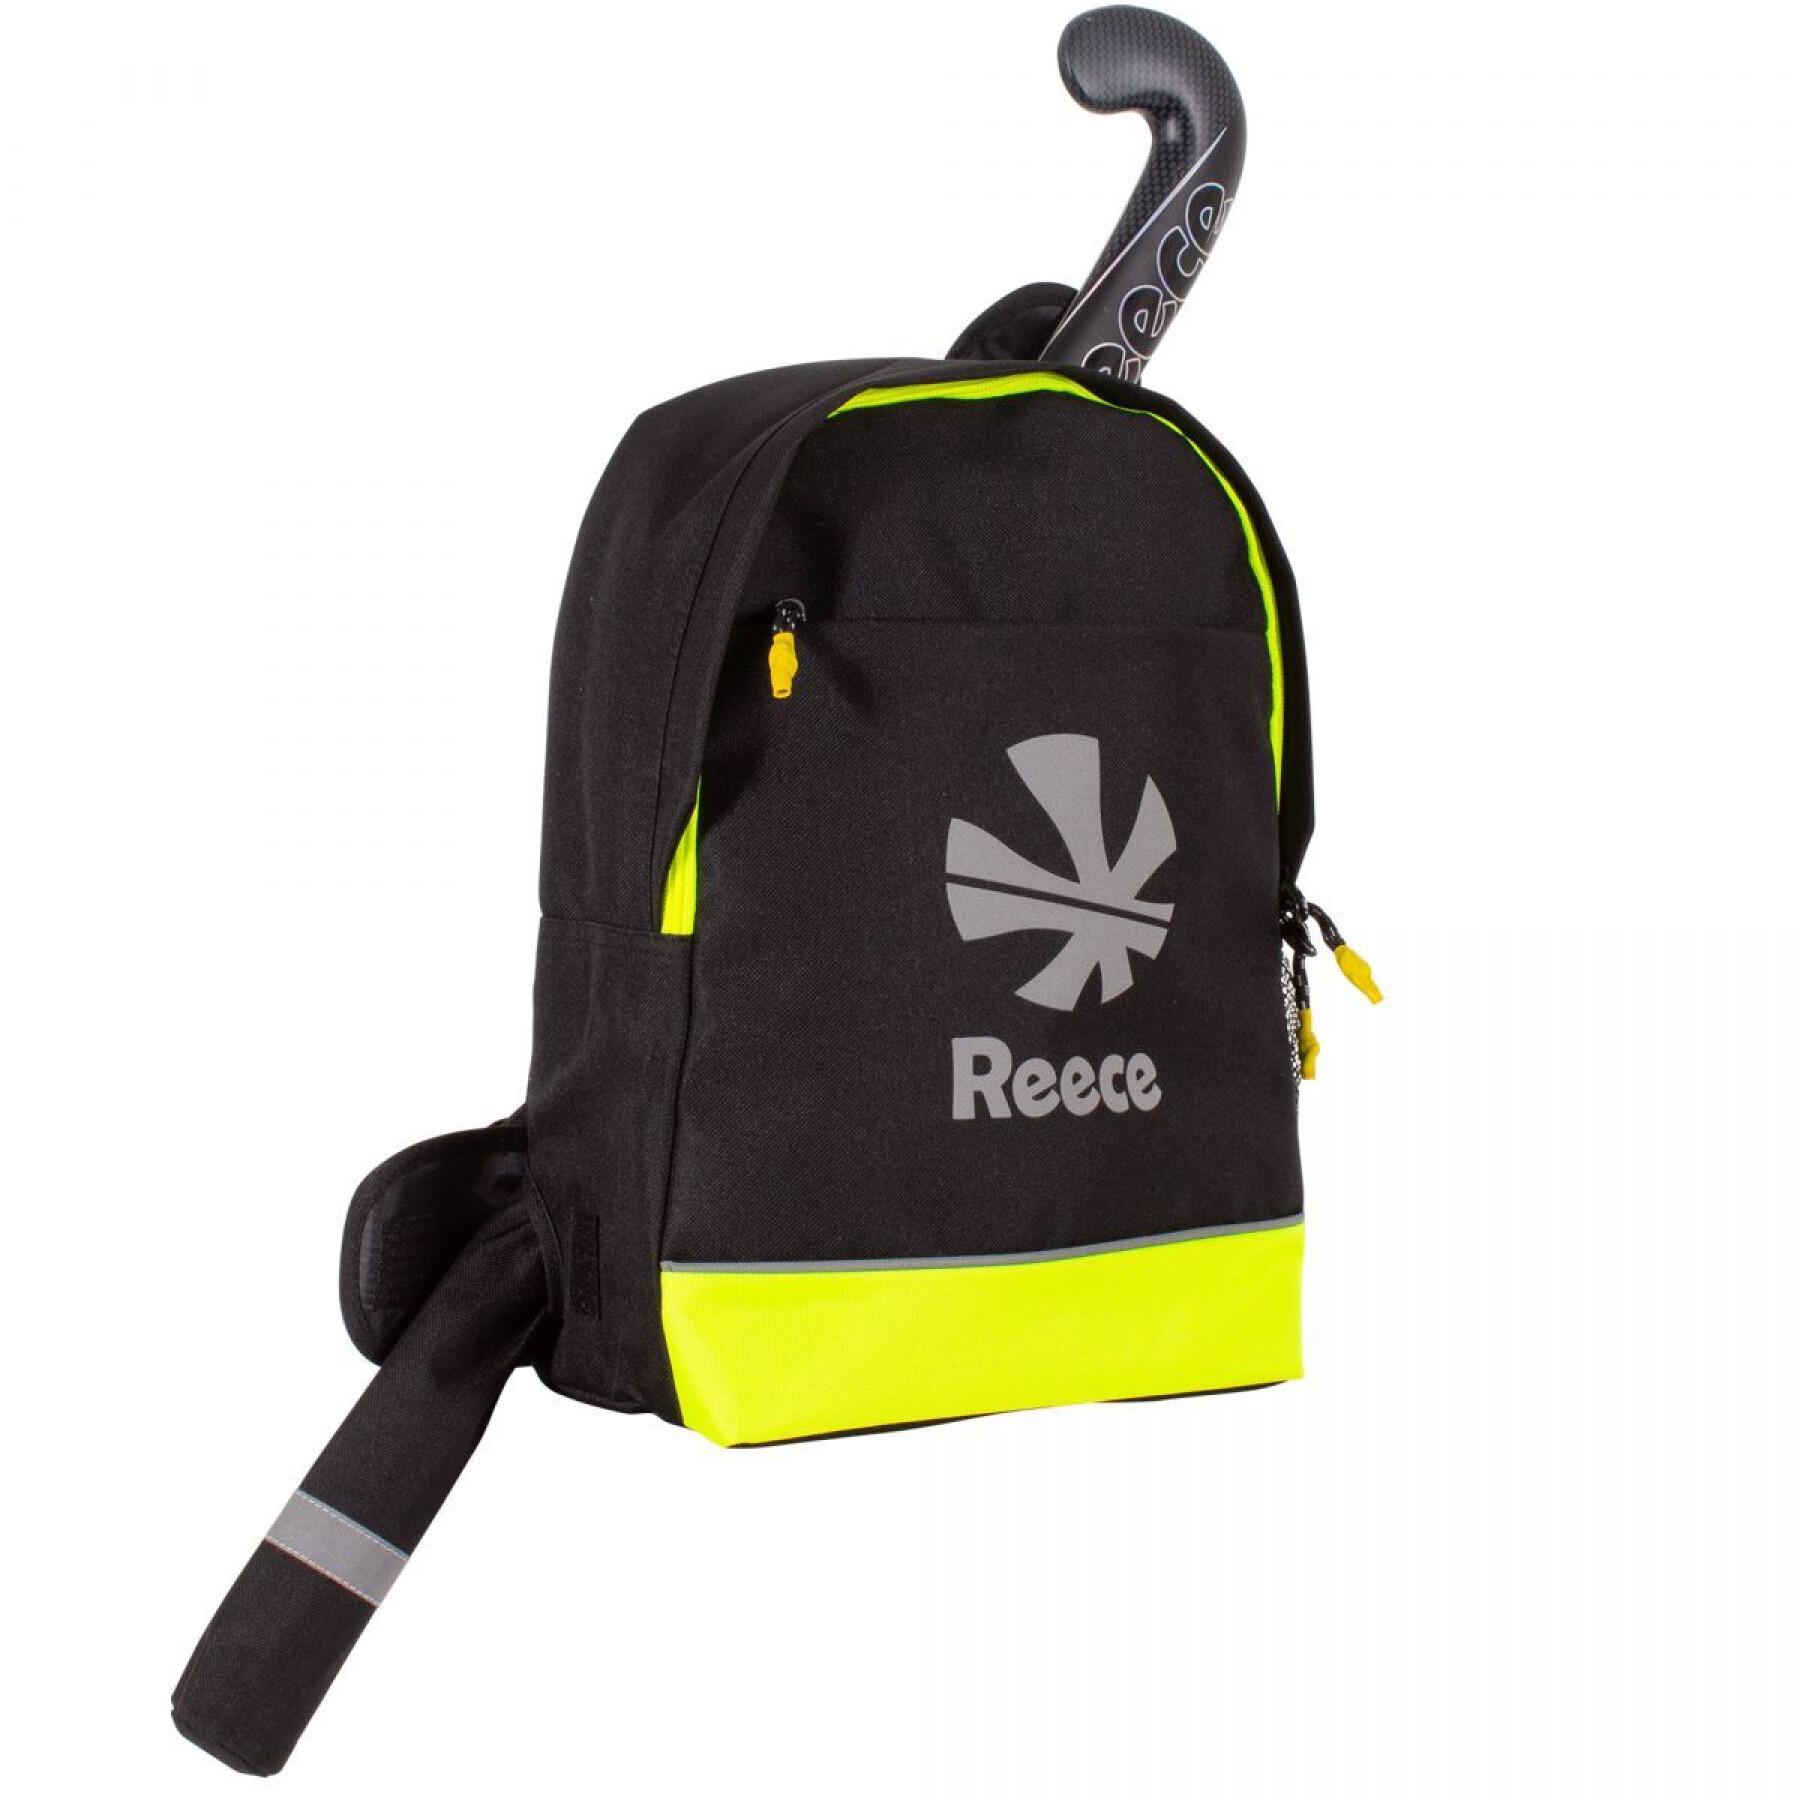 Children's backpack Reece Australia Ranken